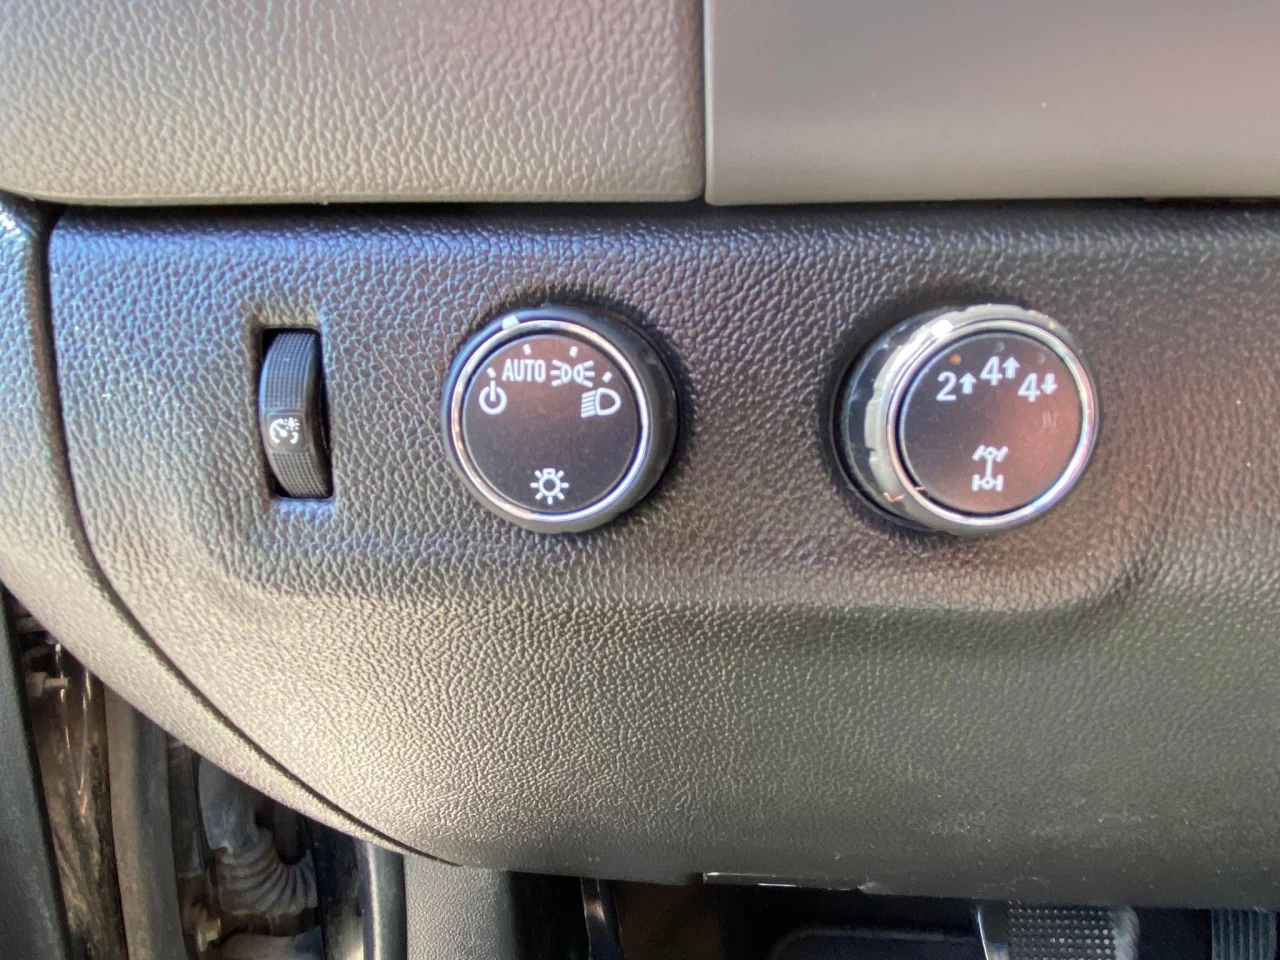 2017 CHEVROLET COLORADO LT V6 4X4 CREW CAB / BOITE DE 6 PIEDS  Image principale